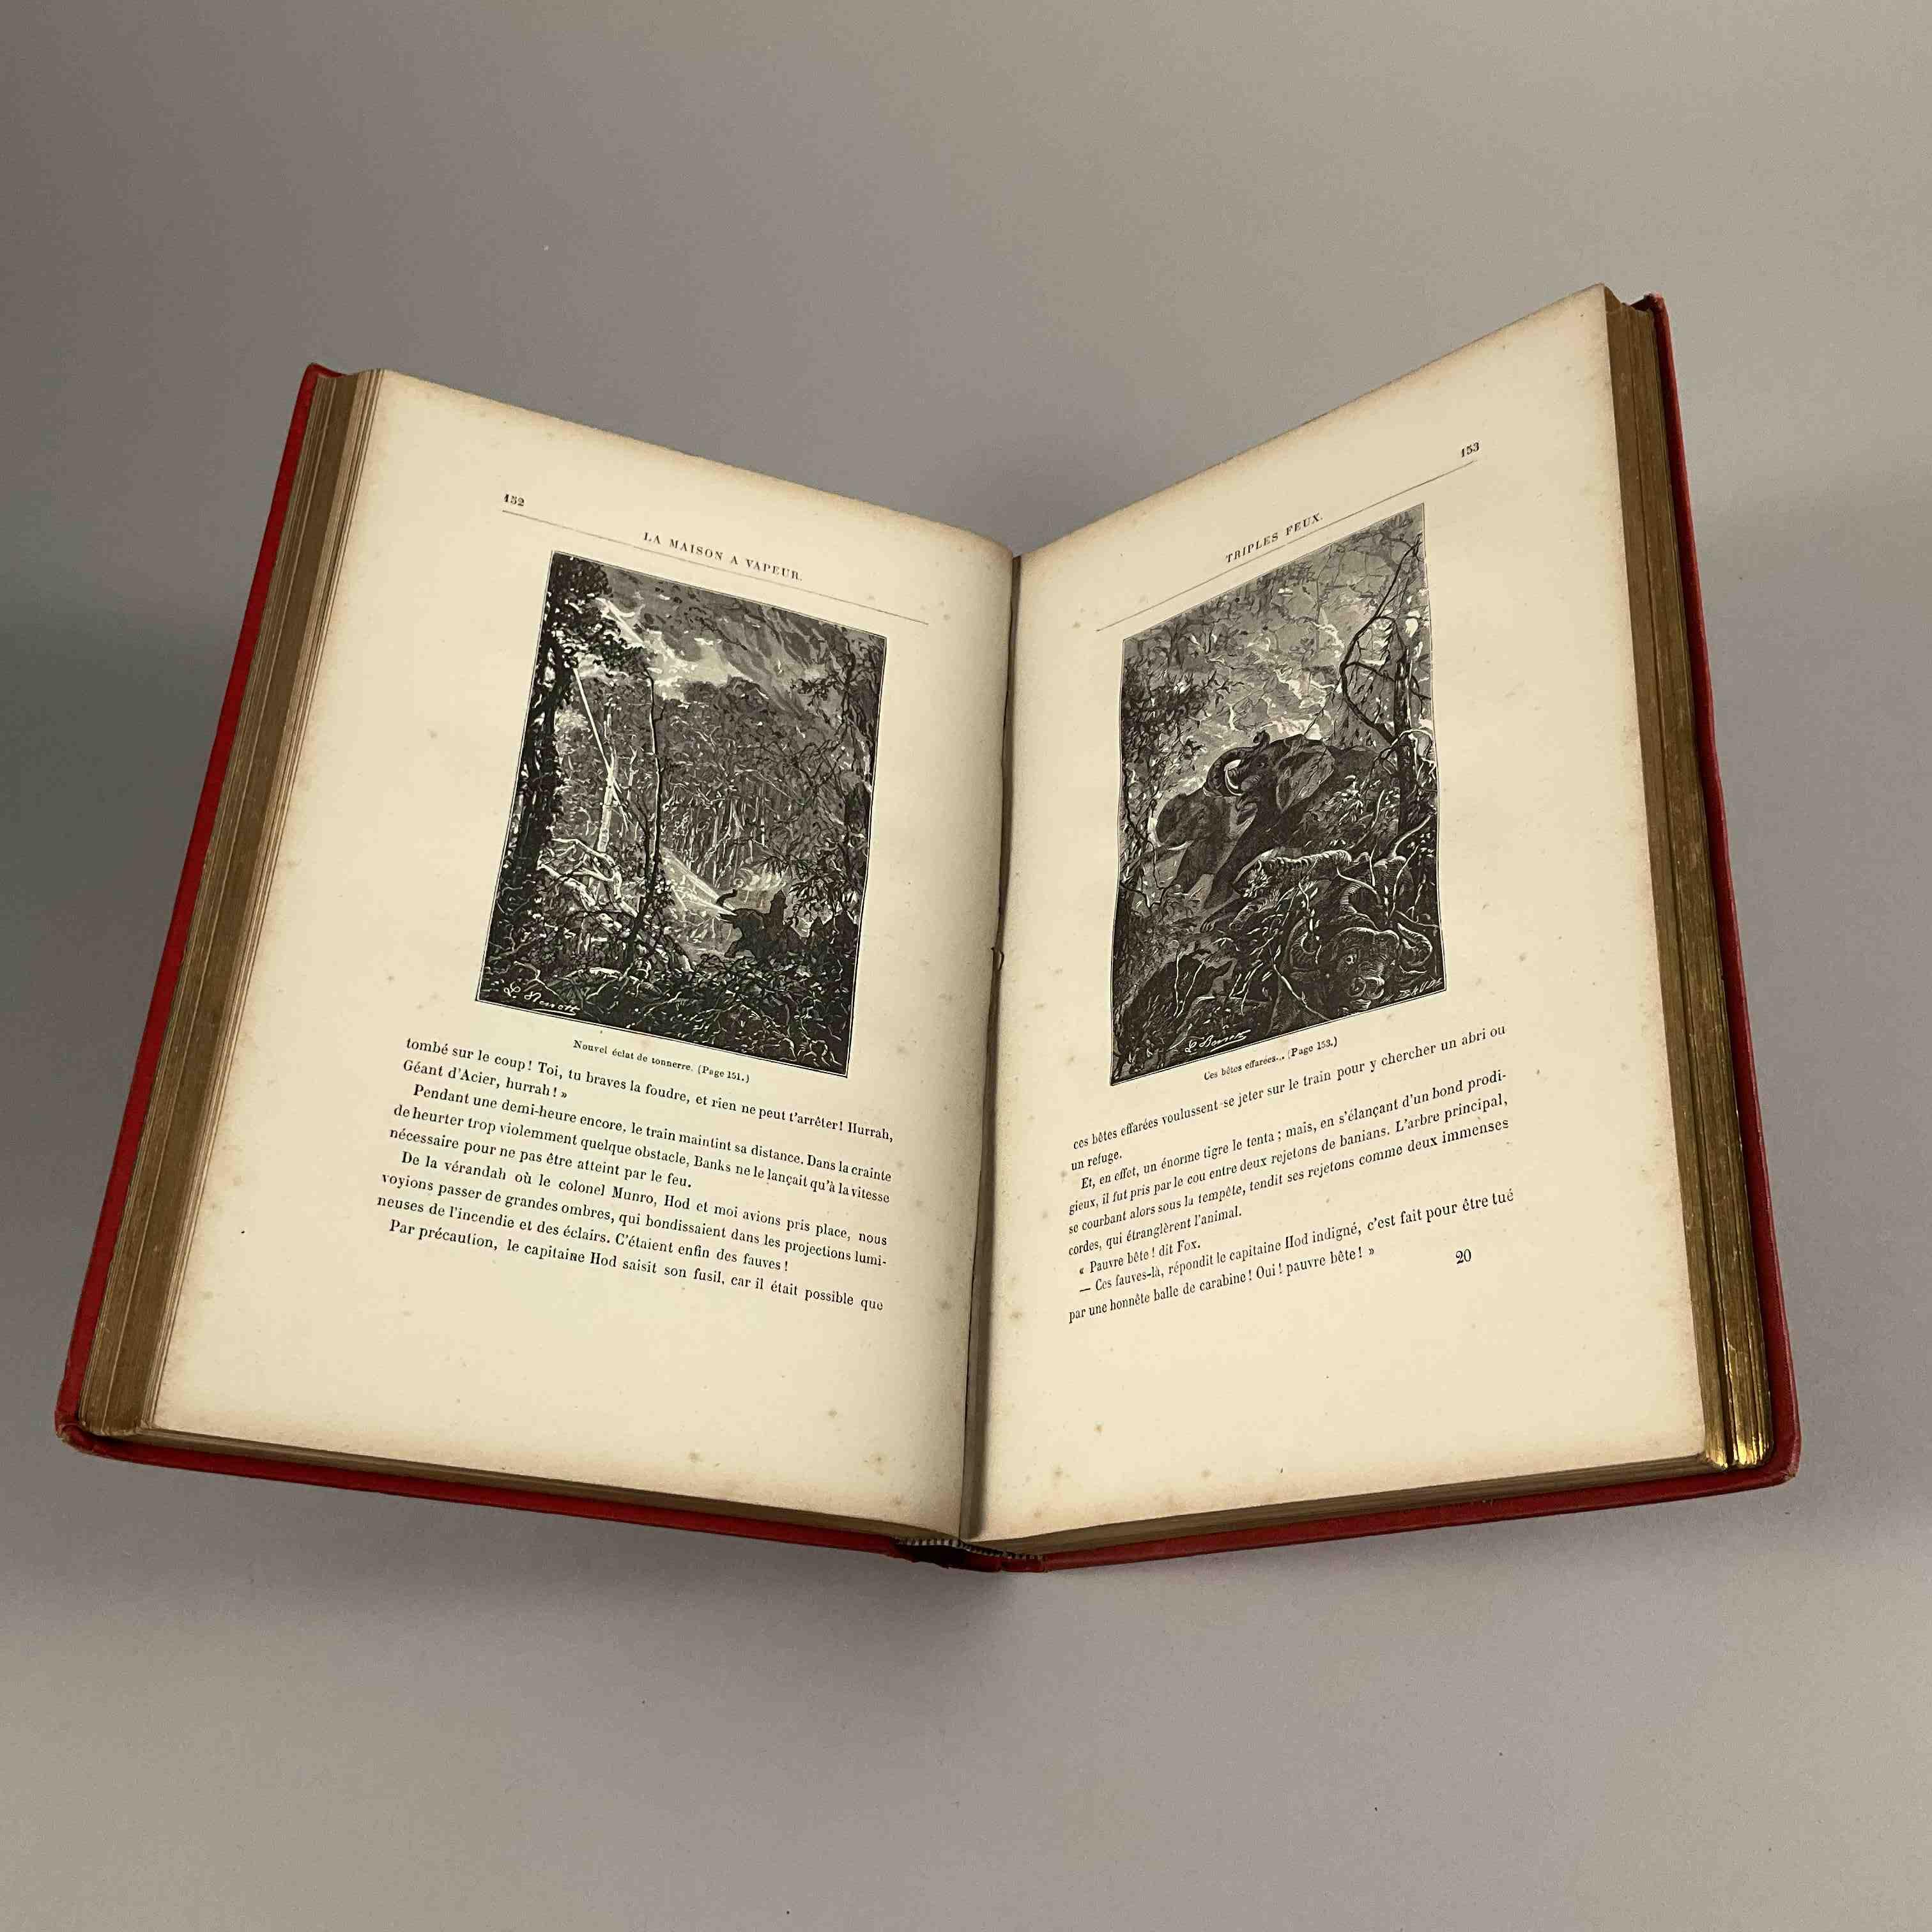 Jules Verne, La Maison à Vapeur.
Paris, Hetzel, sd. Catalogue AI...